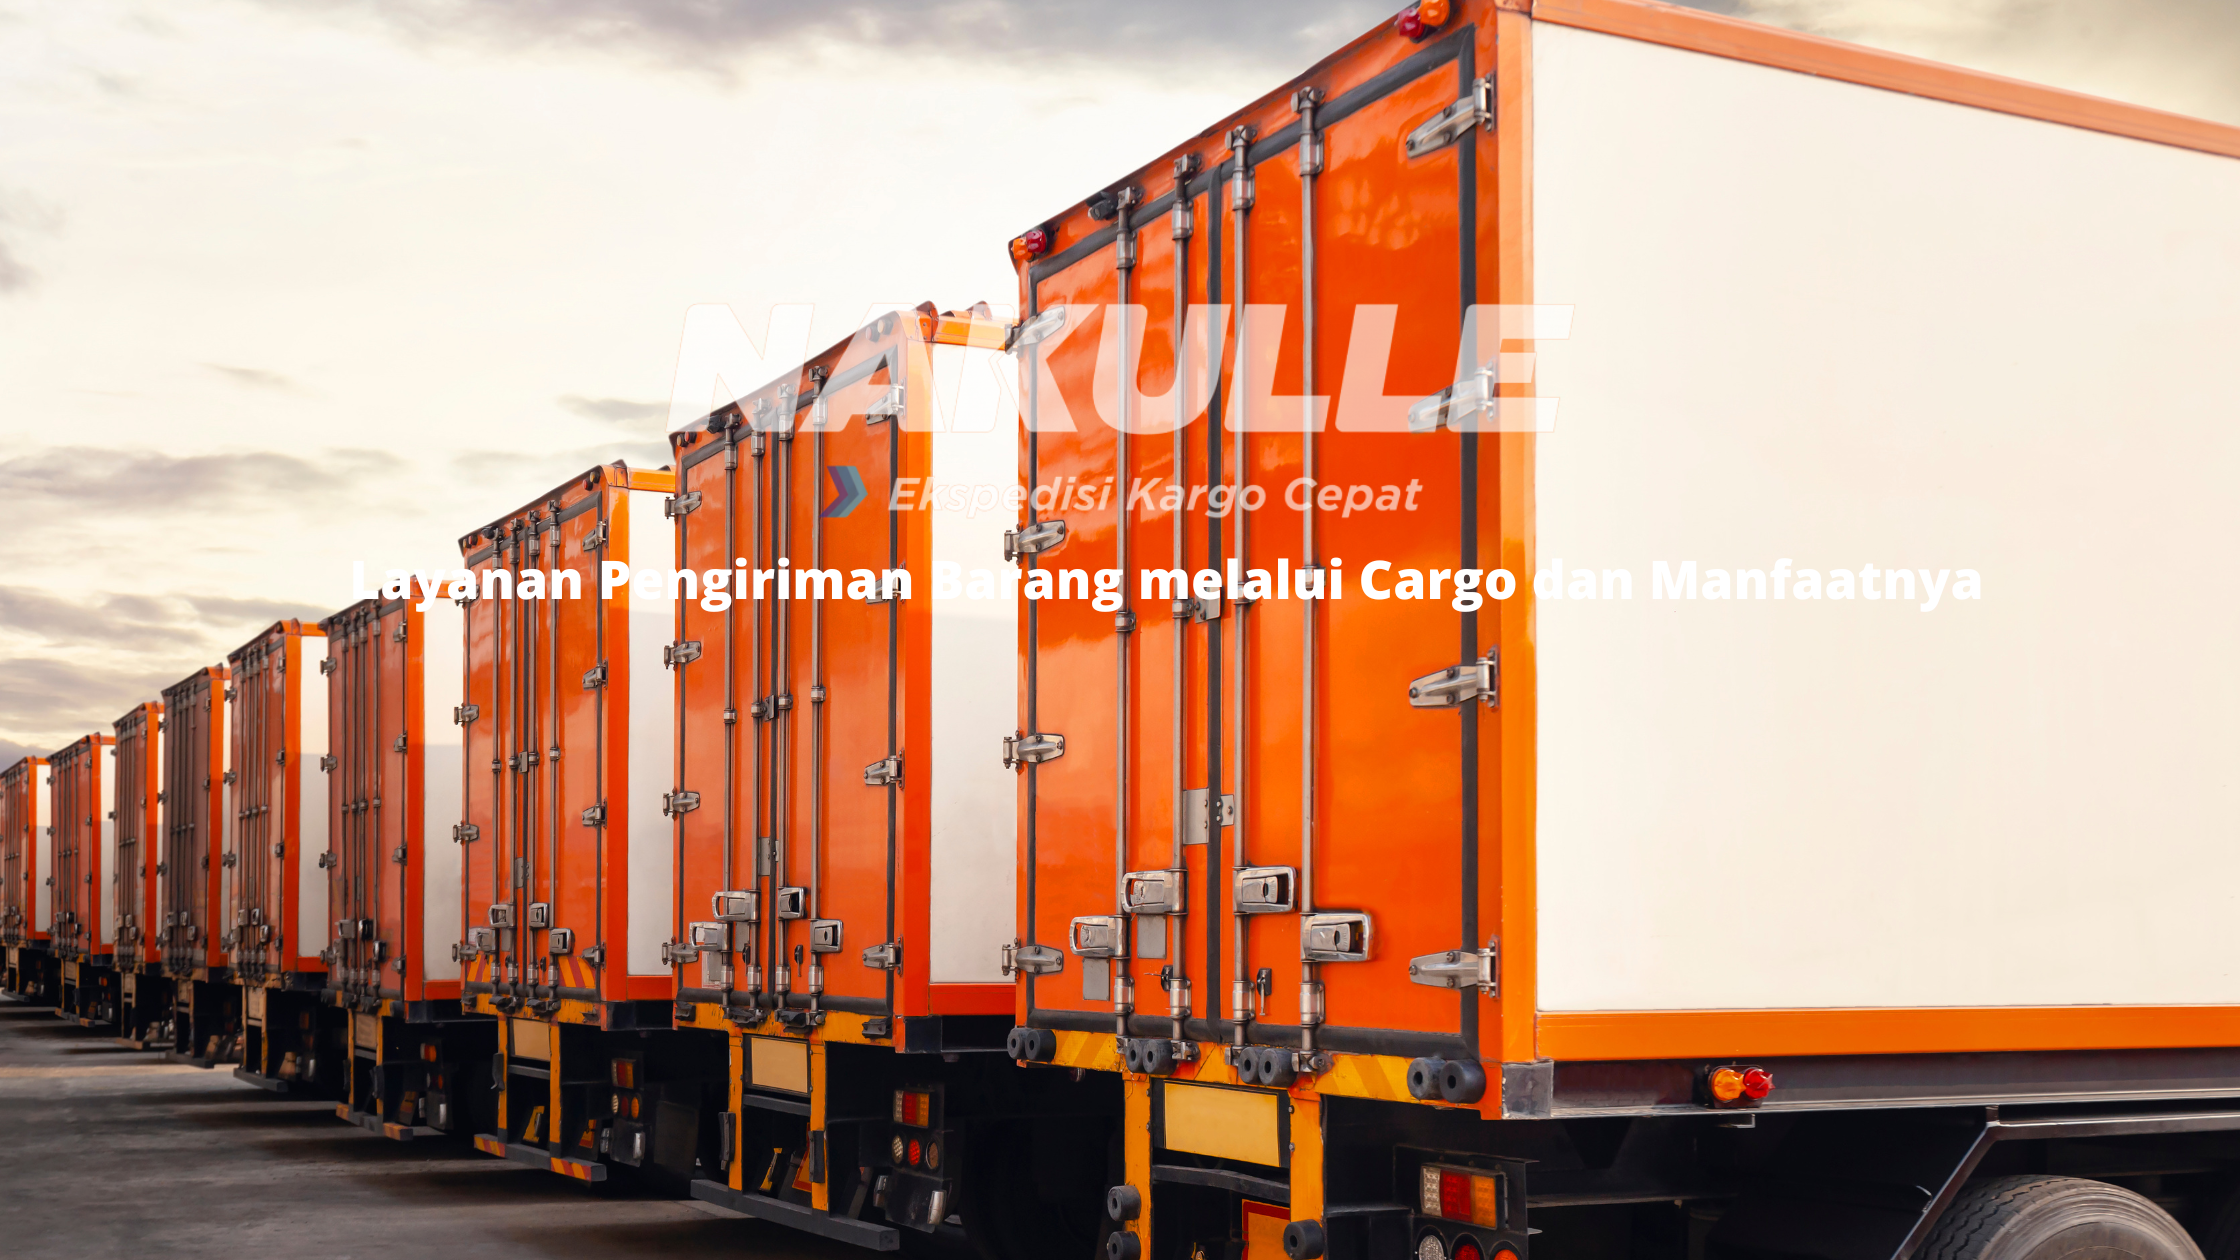 Layanan Pengiriman Barang melalui Cargo dan Manfaatnya